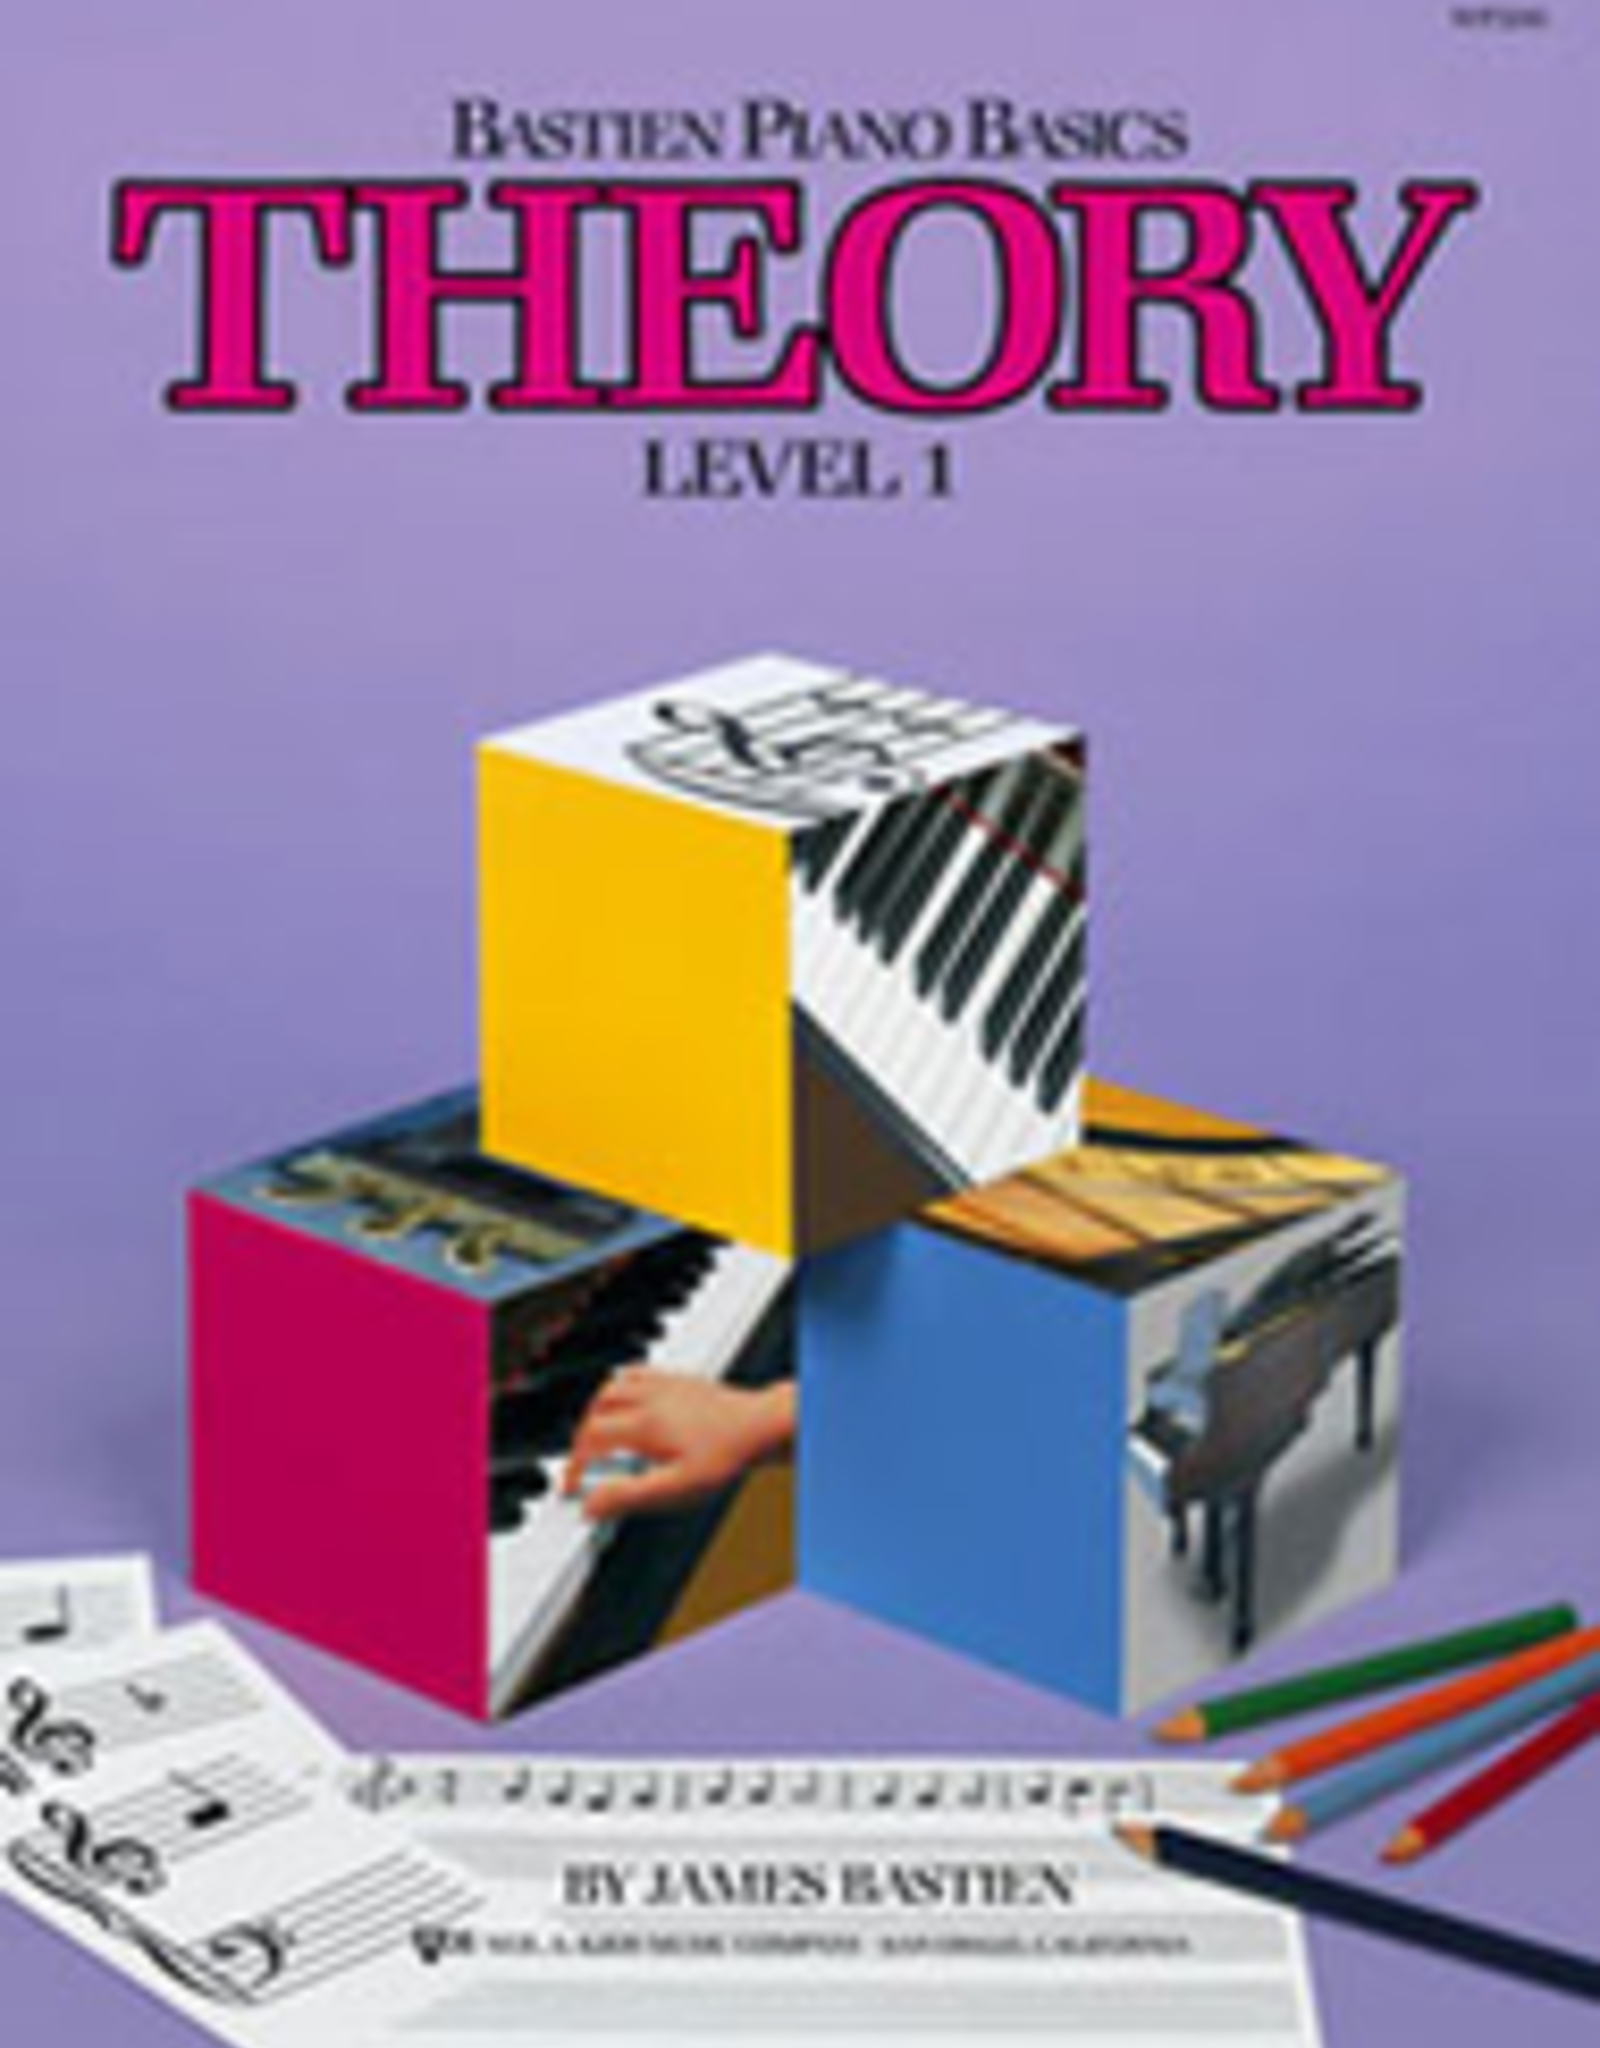 Kjos Bastien Piano Basics Theory Level 1 *